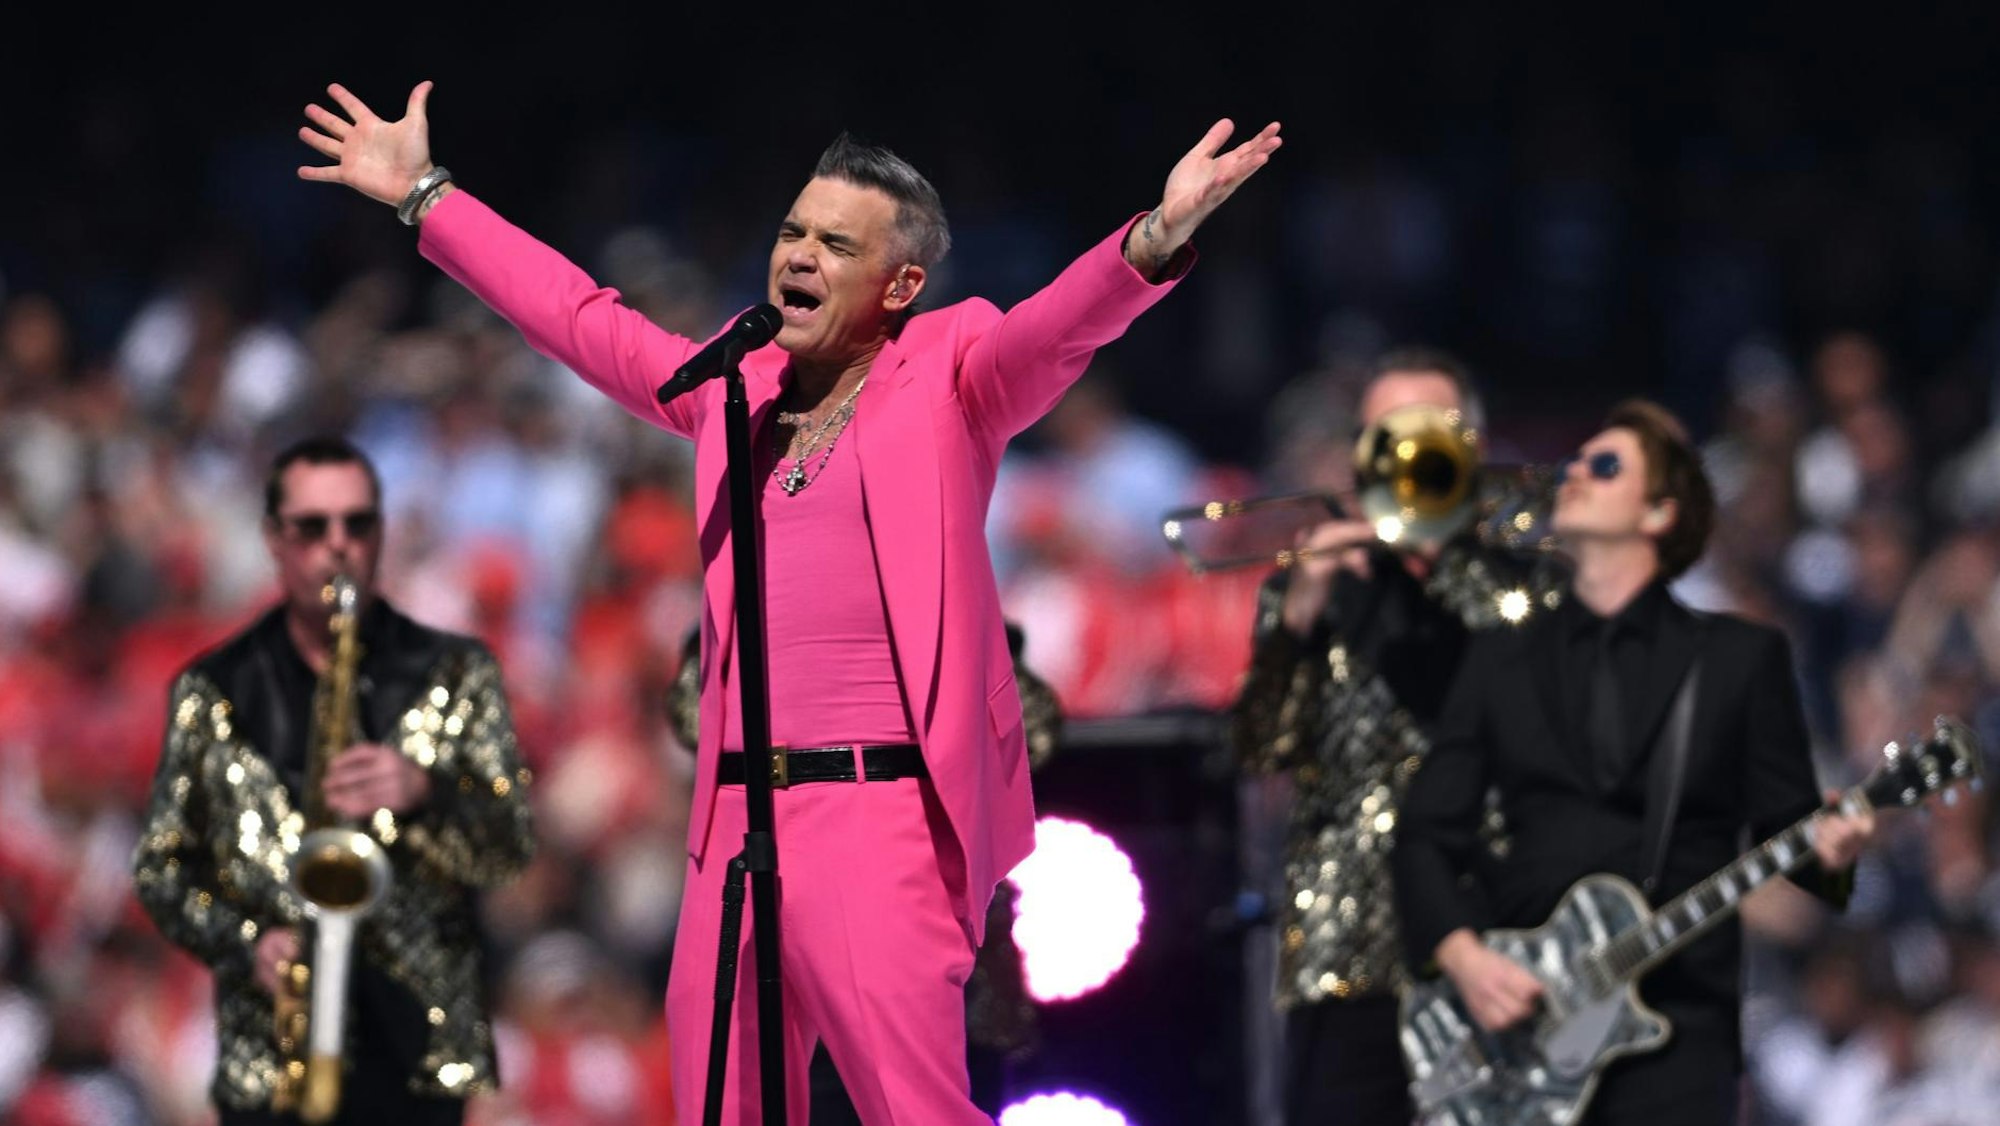 Robbie Williams streckt beim Live-Auftritt die Arme aus. Er trägt einen pinken Anzug und singt. Hinter ihm spielt seine Band mit Glitzer-Jacketts.